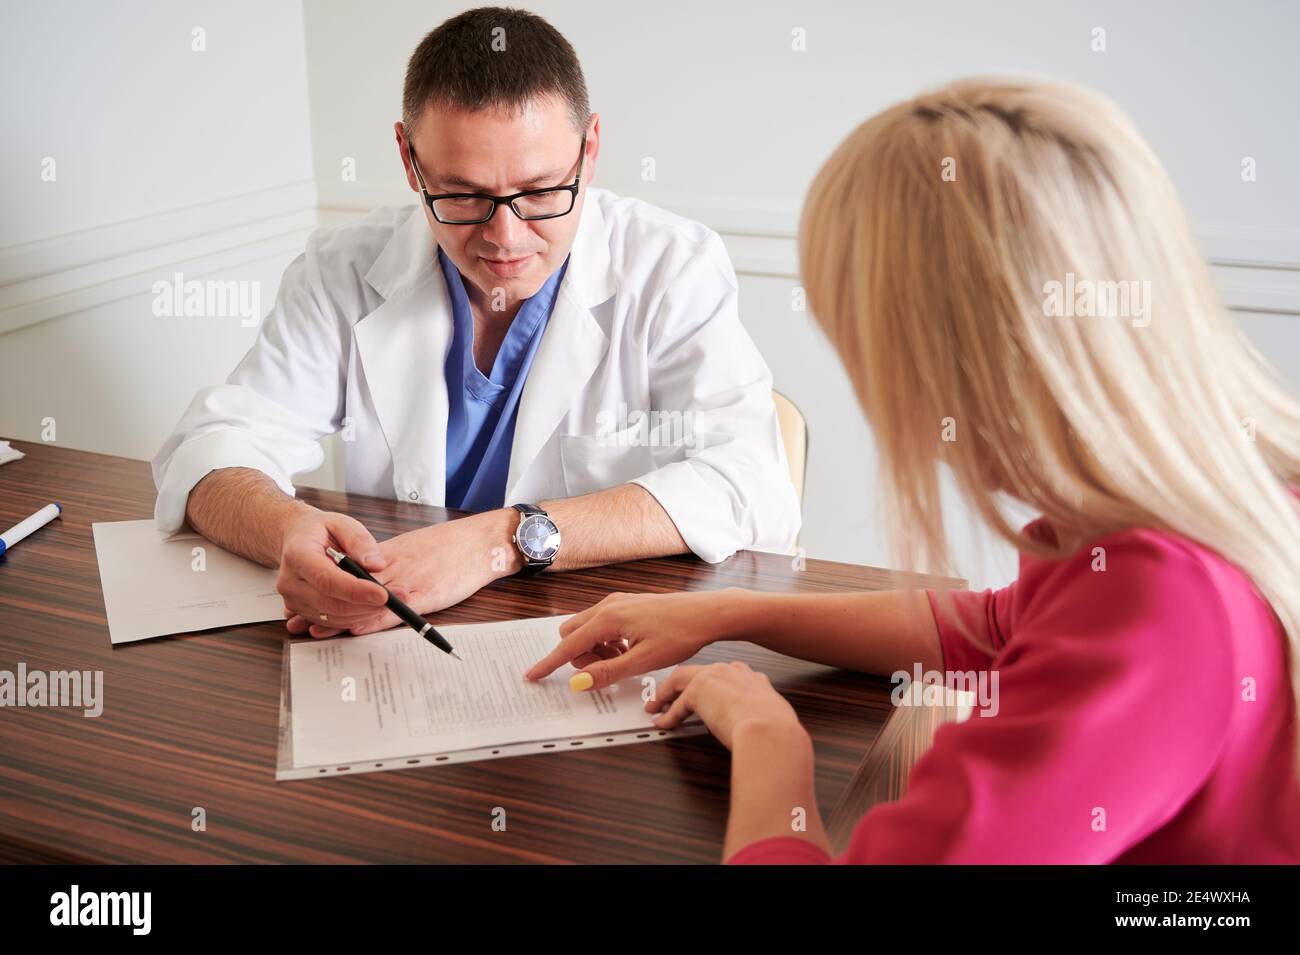 Chirurgien masculin parlant avec une patiente au bureau. Jeune femme blonde discutant de chirurgie plastique avec un médecin dans une clinique moderne. Concept de rendez-vous médical et de chirurgie esthétique. Banque D'Images